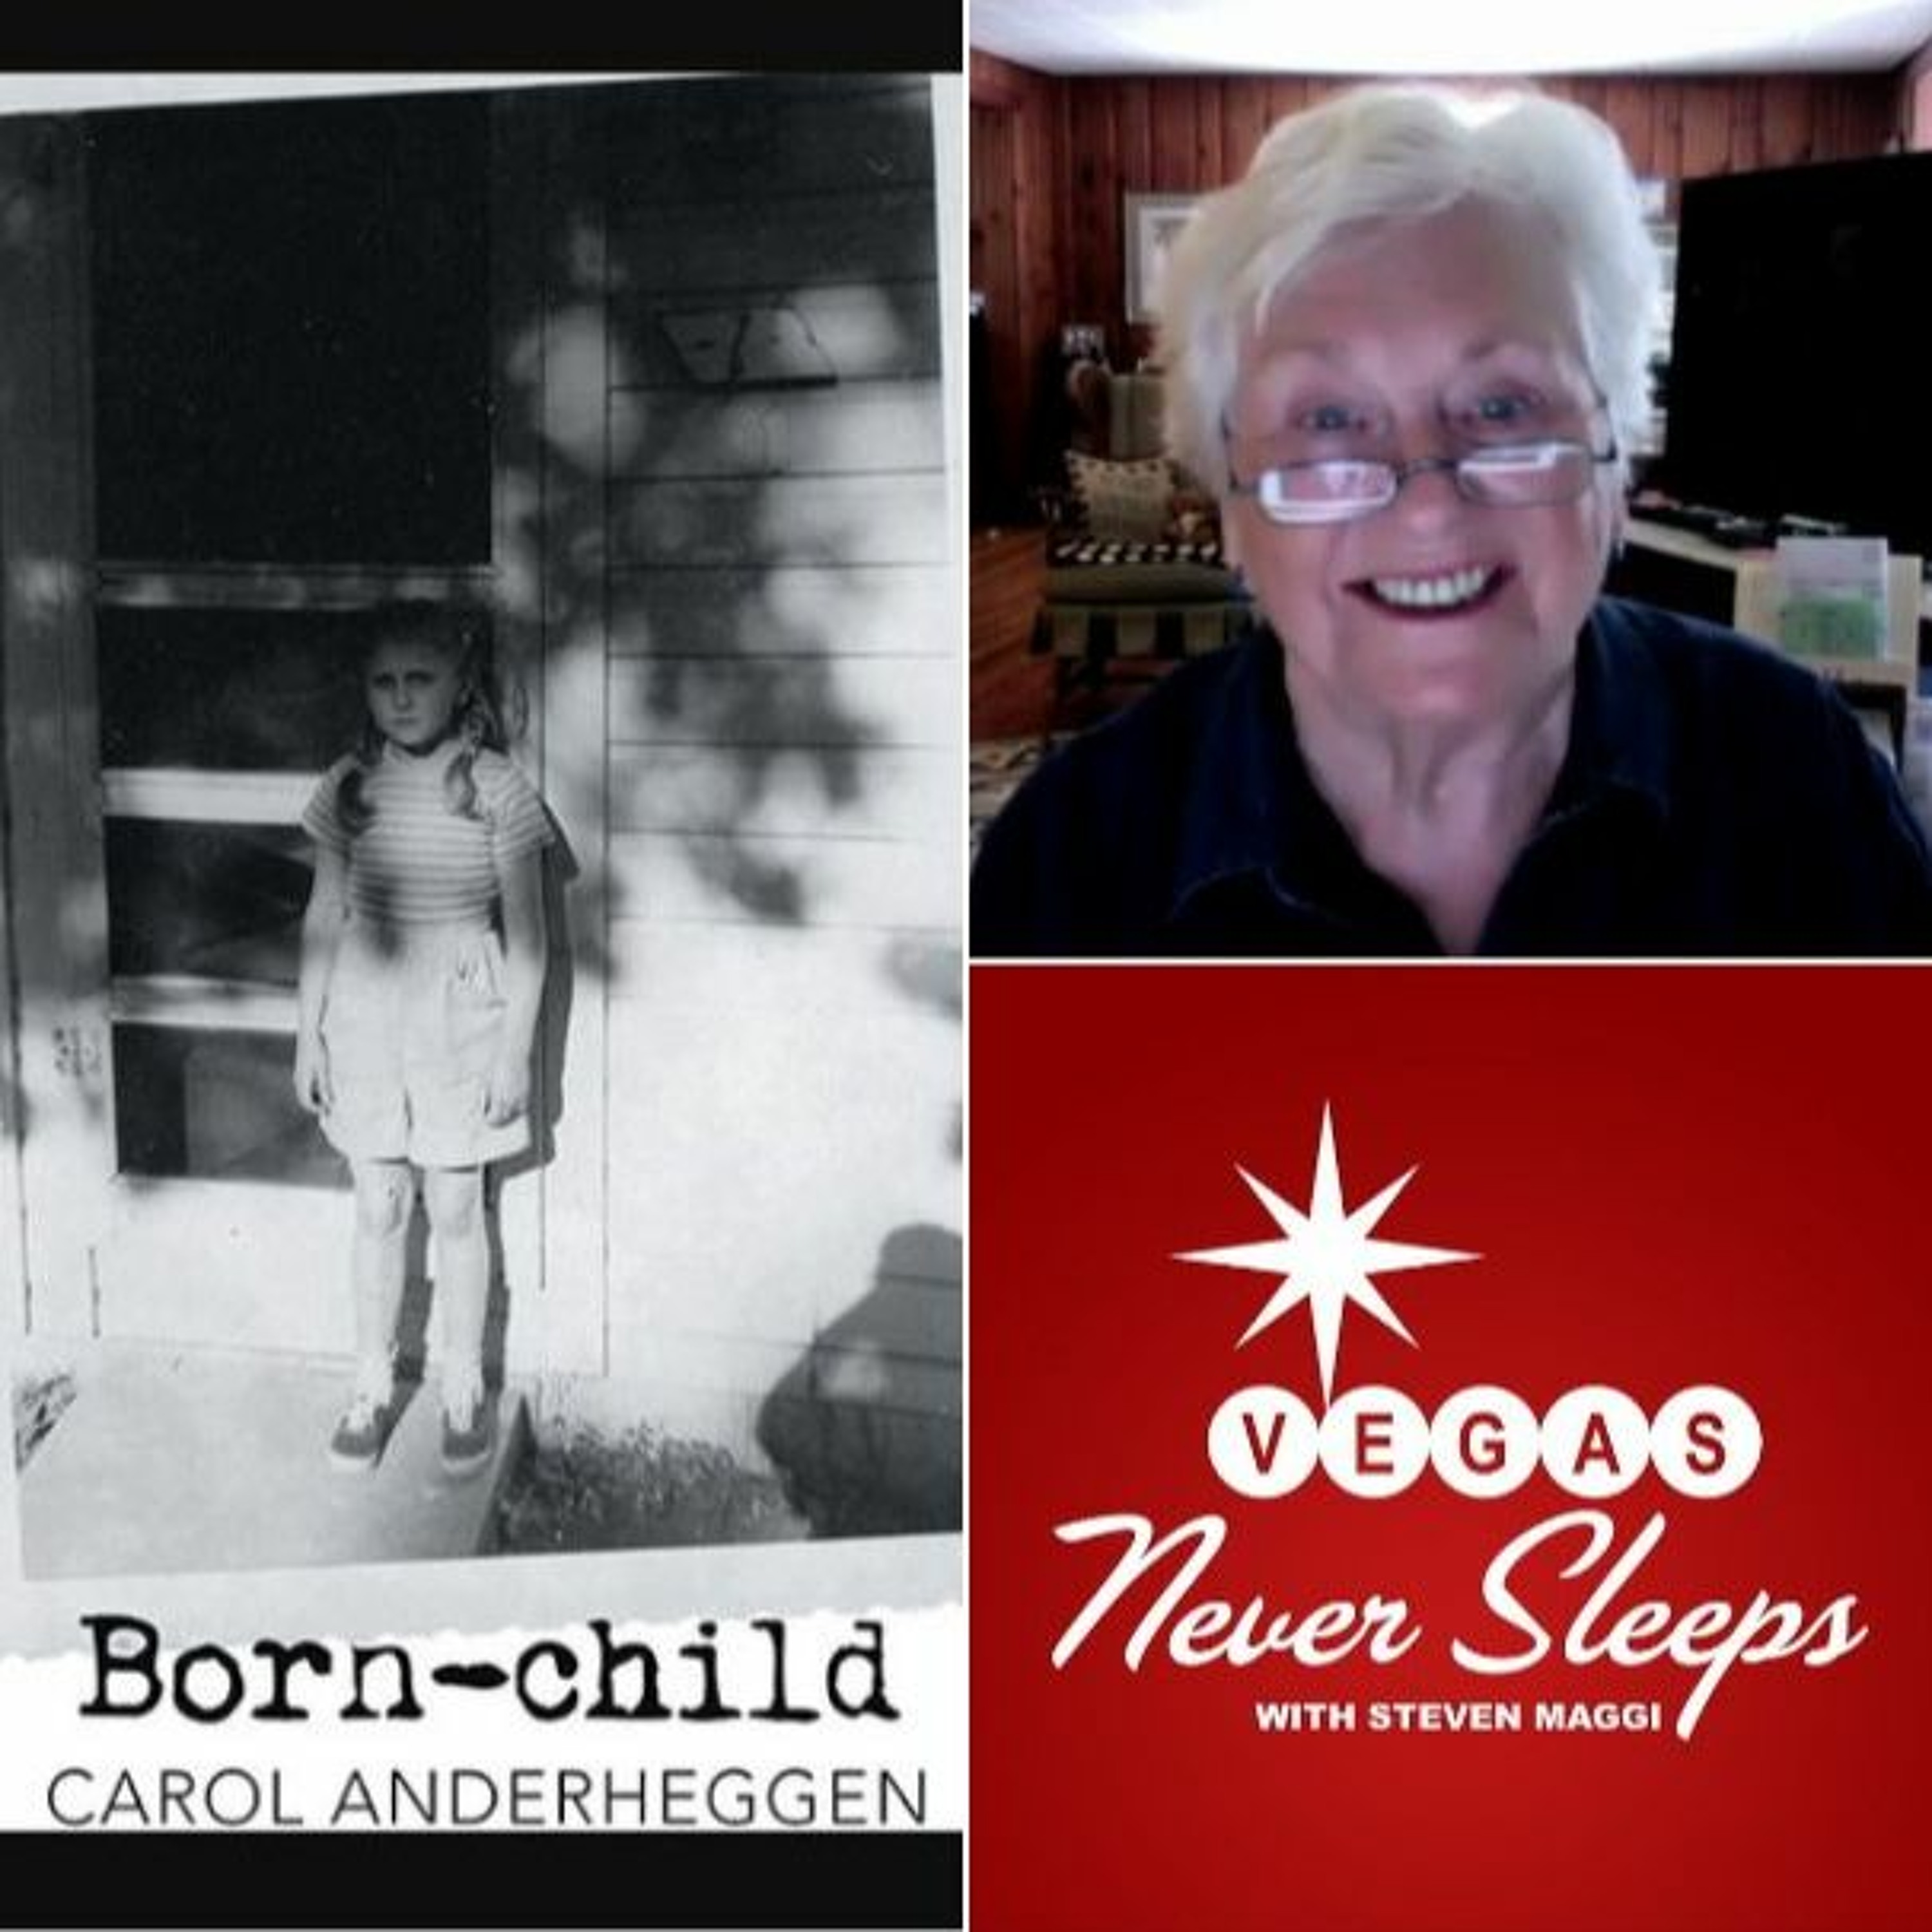 ”Born-Child” - The Complete Carol Anderheggen Interview